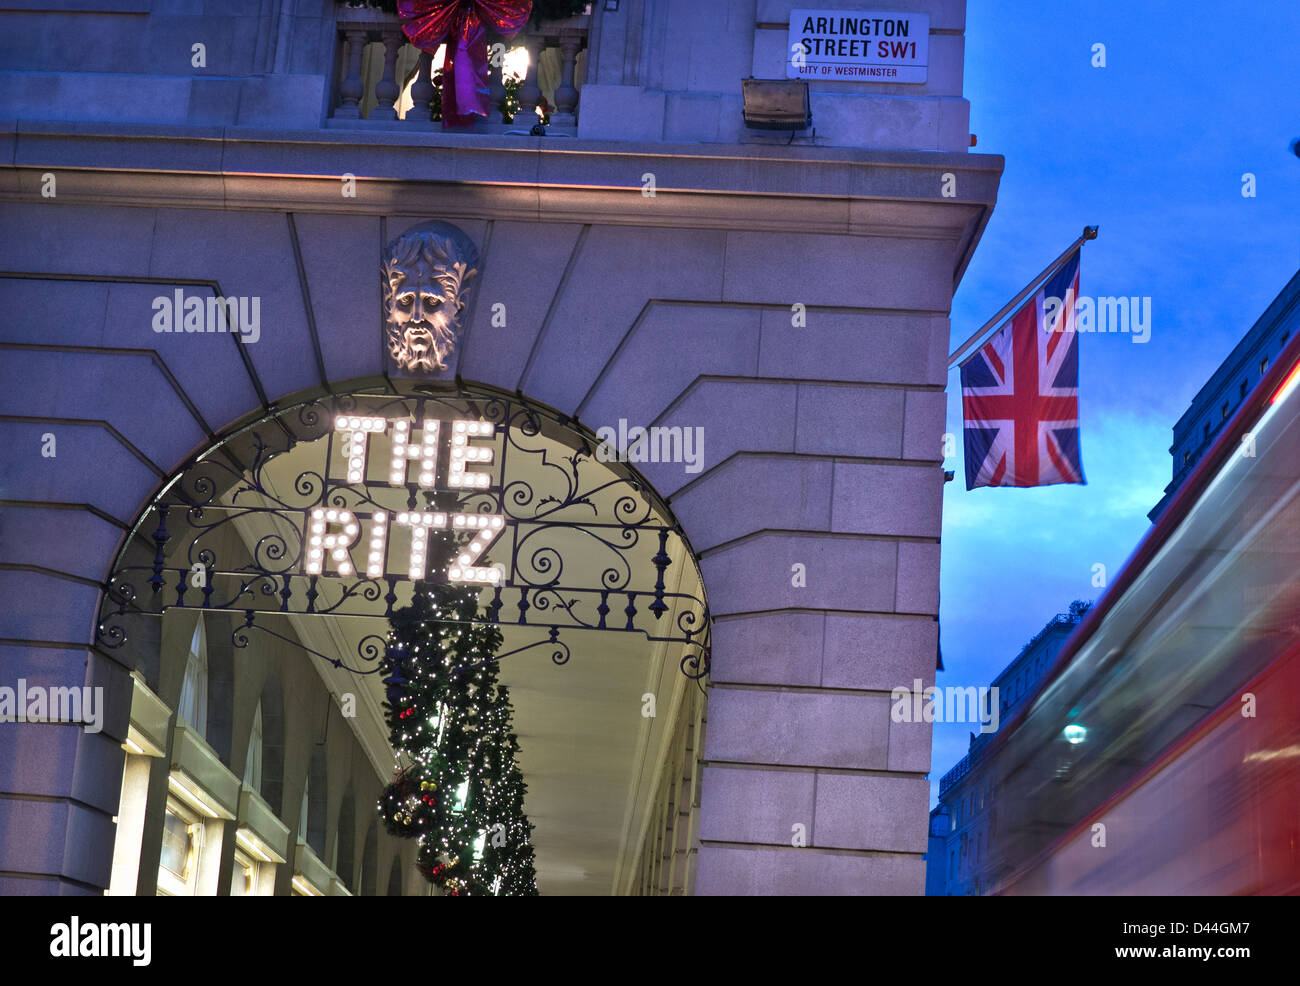 Le Ritz Hotel London au crépuscule d'éclairage extérieur nom avec des décorations de Noël Union Jack flag et floue passant red bus Piccadilly Londres UK Banque D'Images